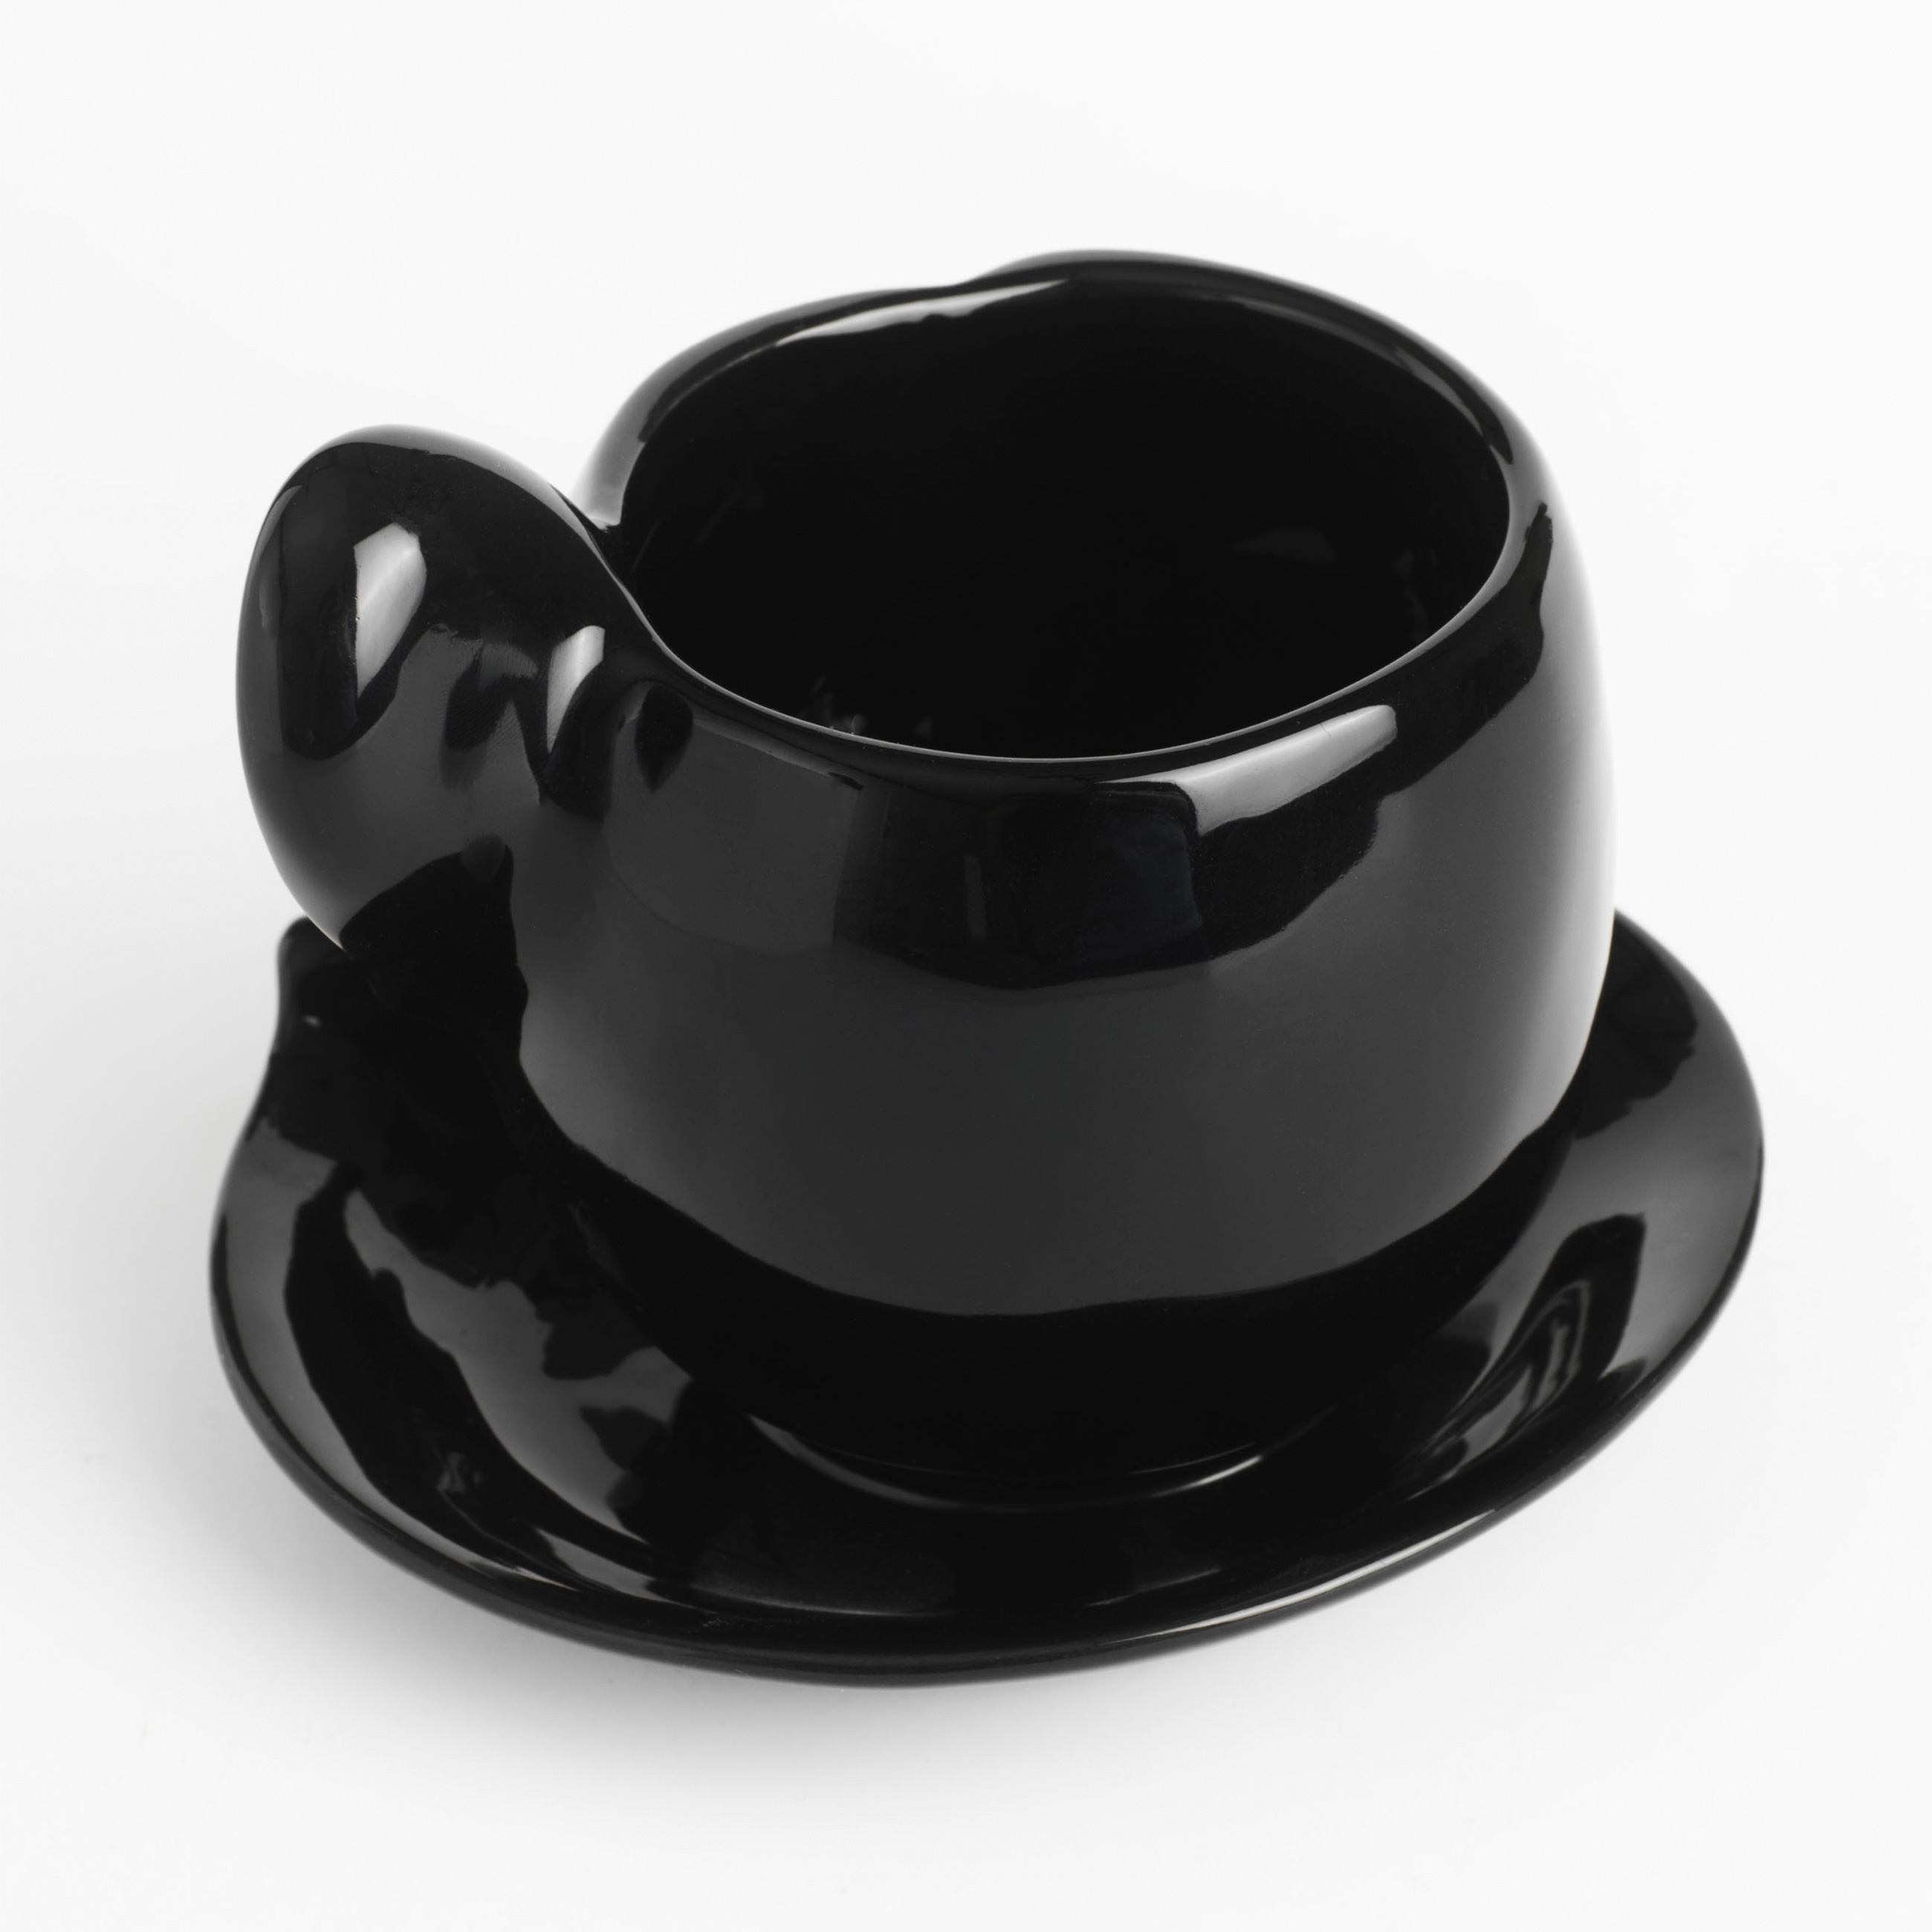 Пара чайная, 1 перс, 2 пр, 320 мл, керамика, черная, Поцелуй, Baise изображение № 2